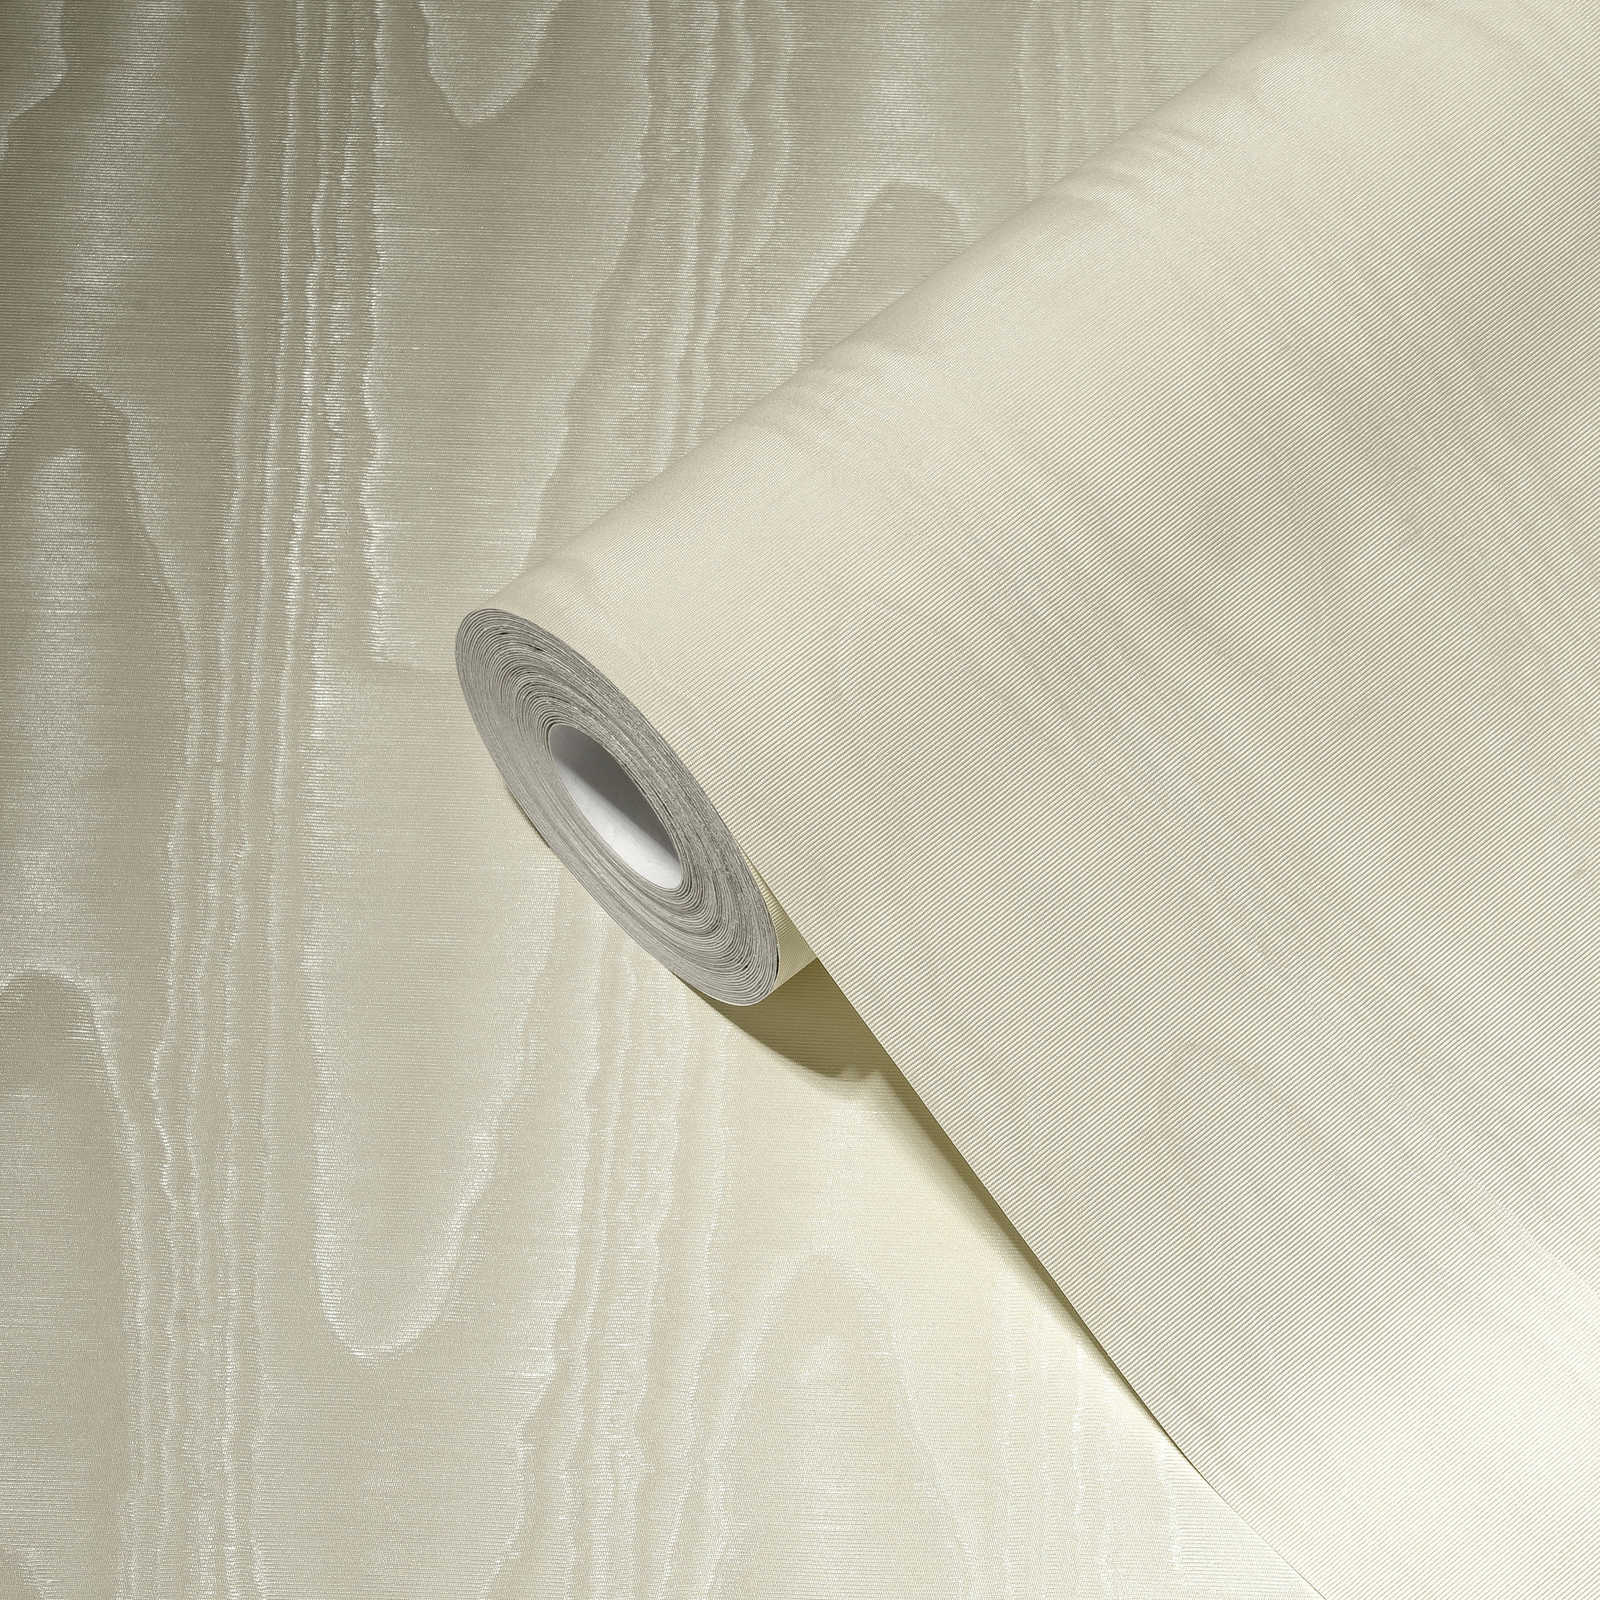             Papel pintado de aspecto textil crema con efecto moiré de seda
        